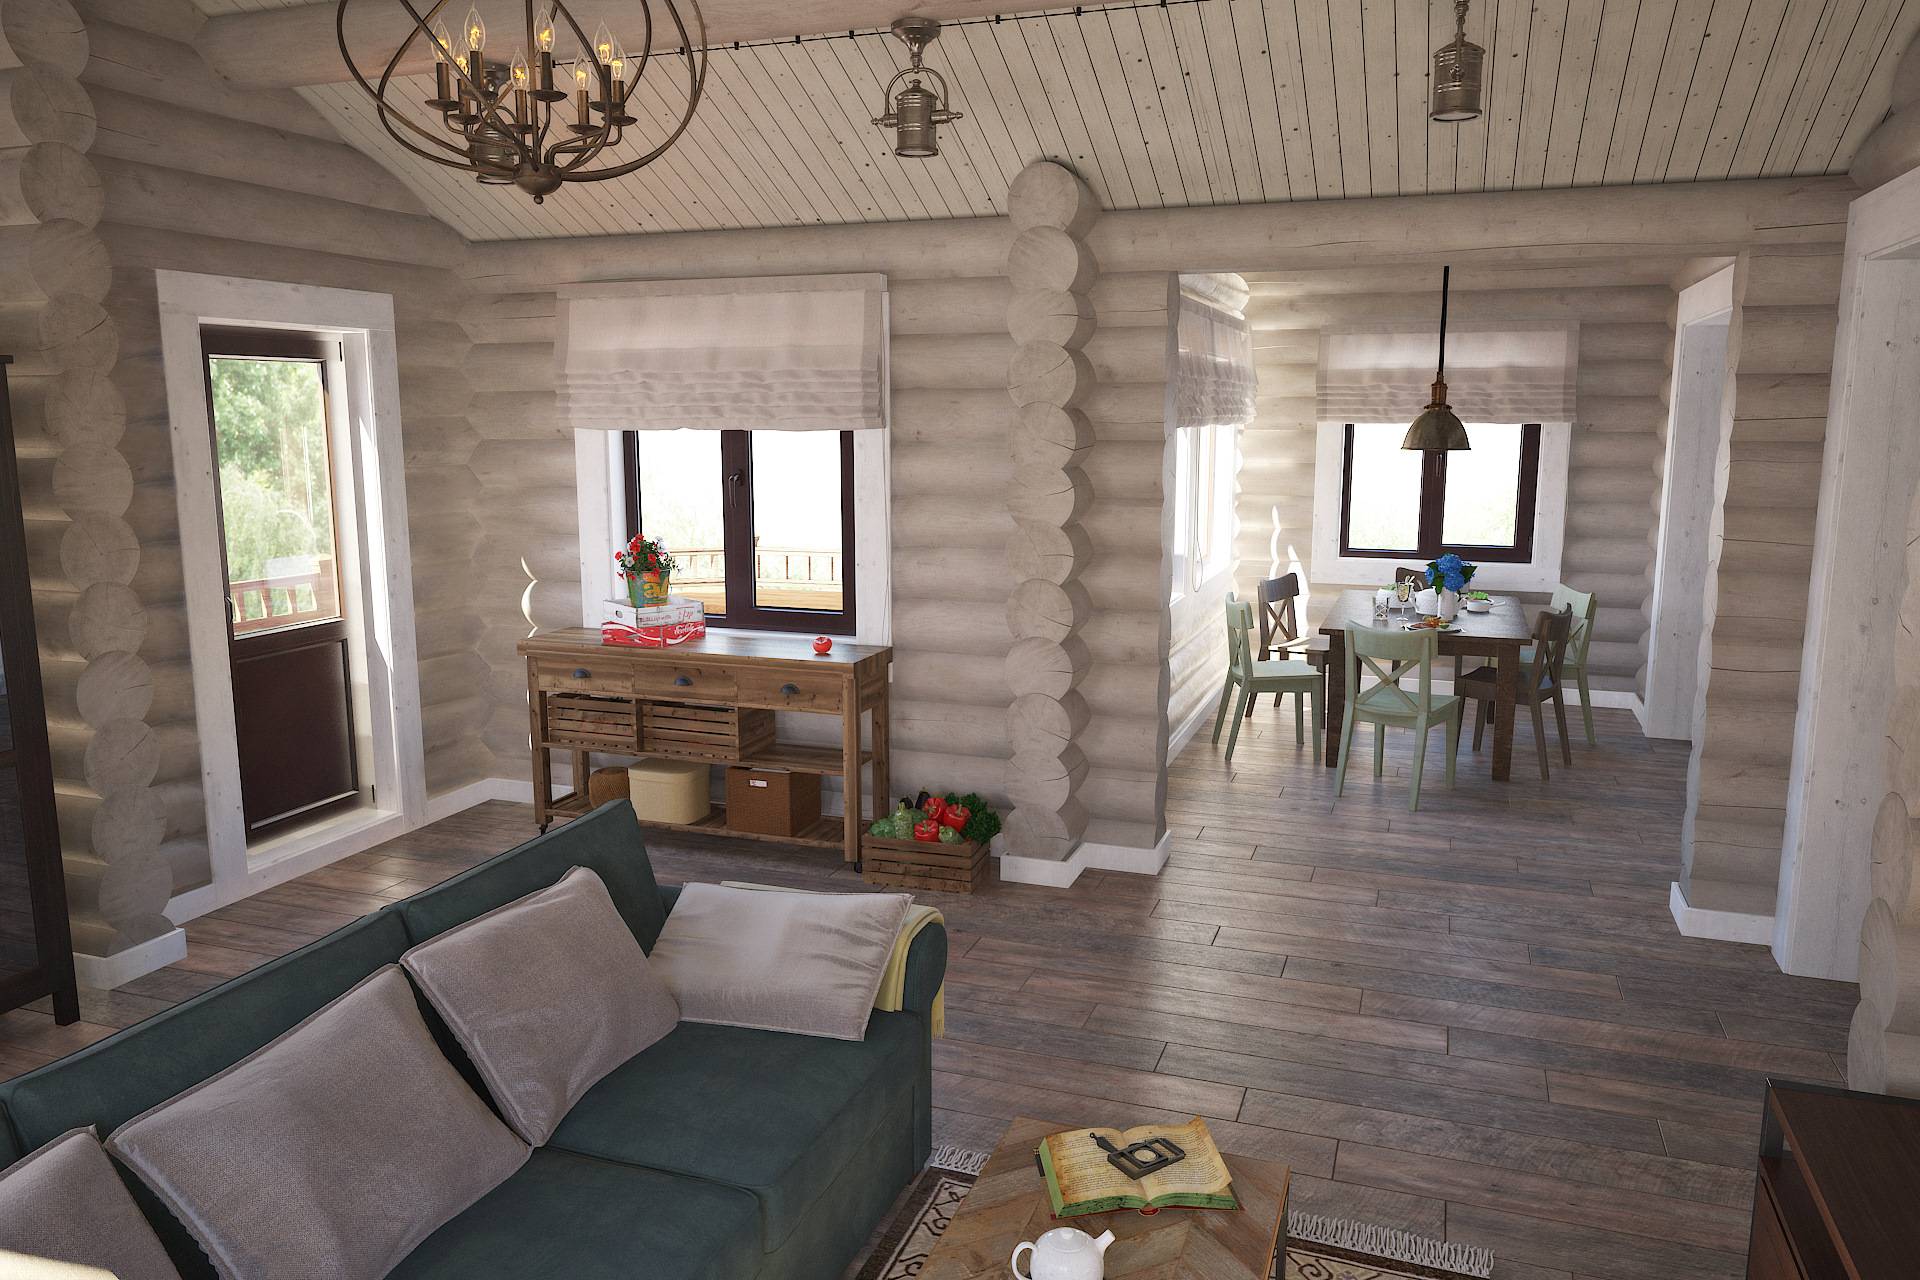 Интерьер деревянного дома: идеи дизайна интерьера 40 фото